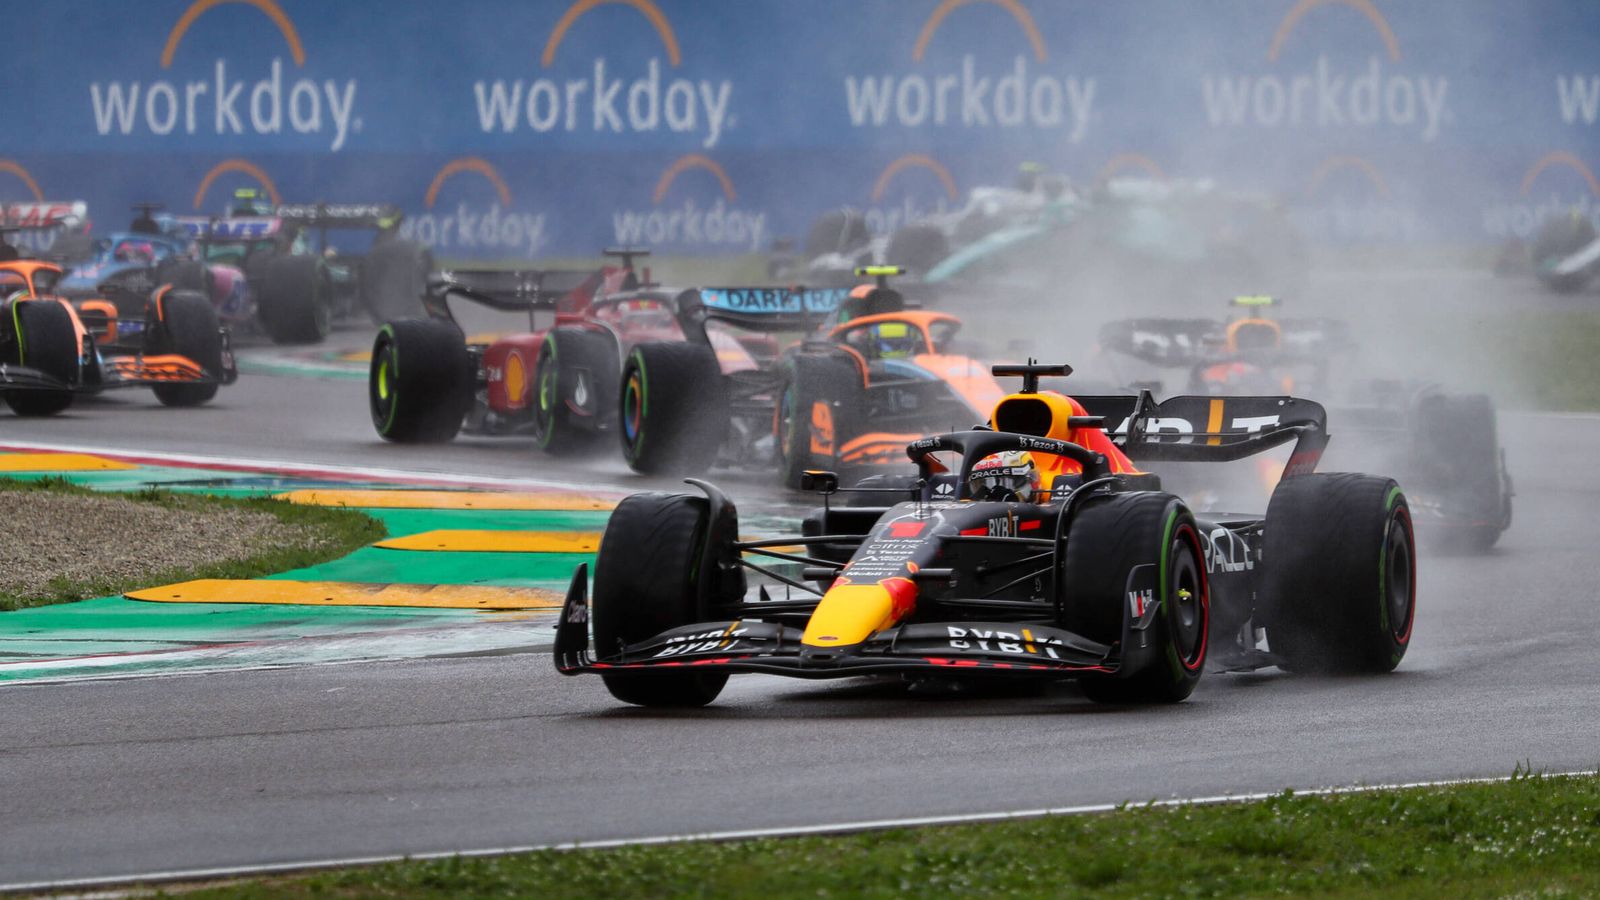 Formel 1 Lage in Imola weiter angespannt Formel 1 News Sky Sport